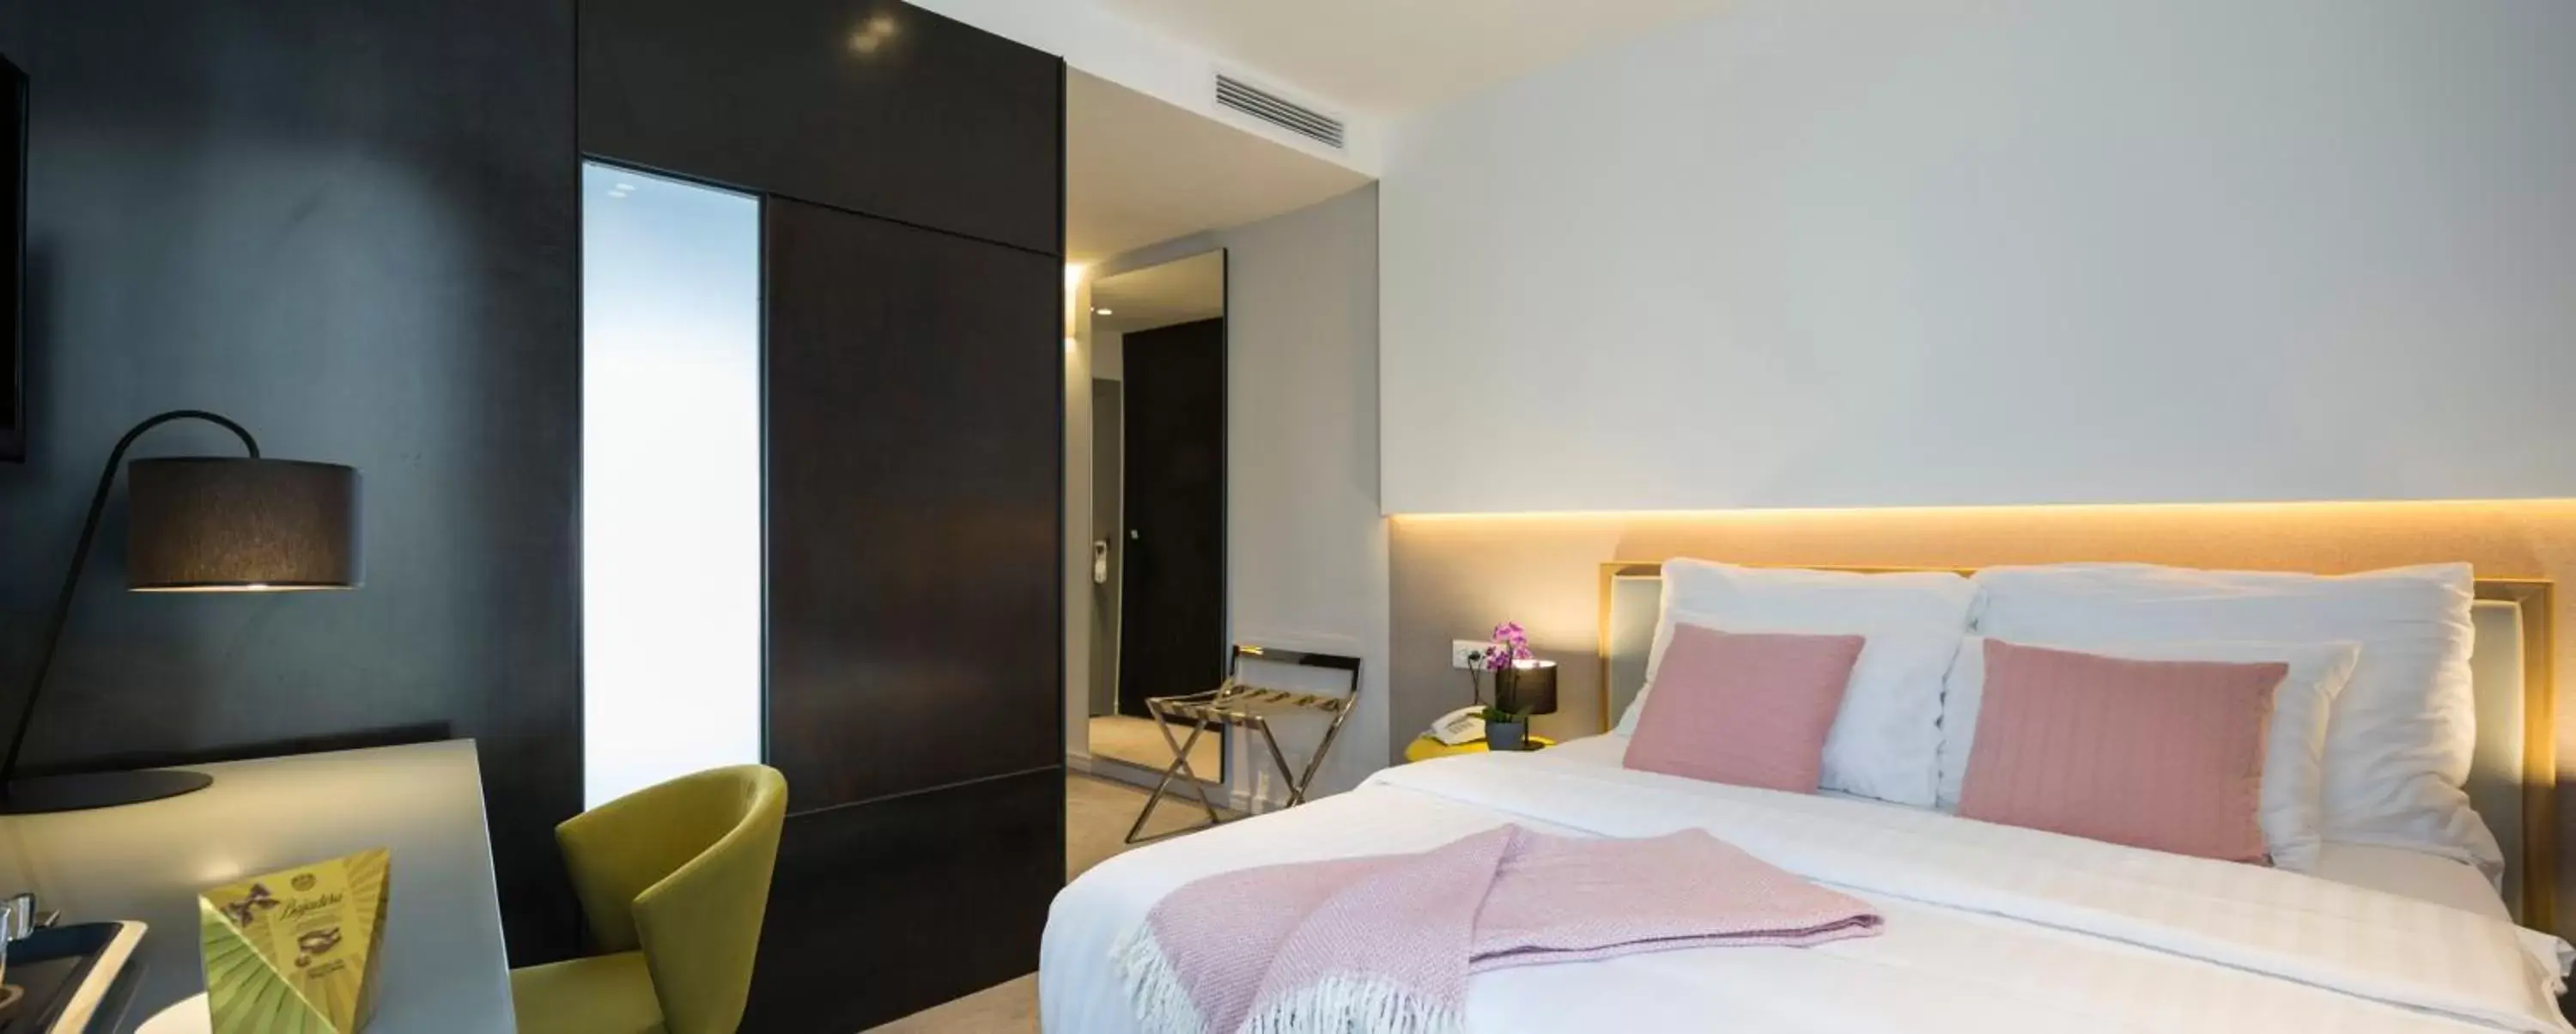 Bedroom, Bed in Livris Hotel